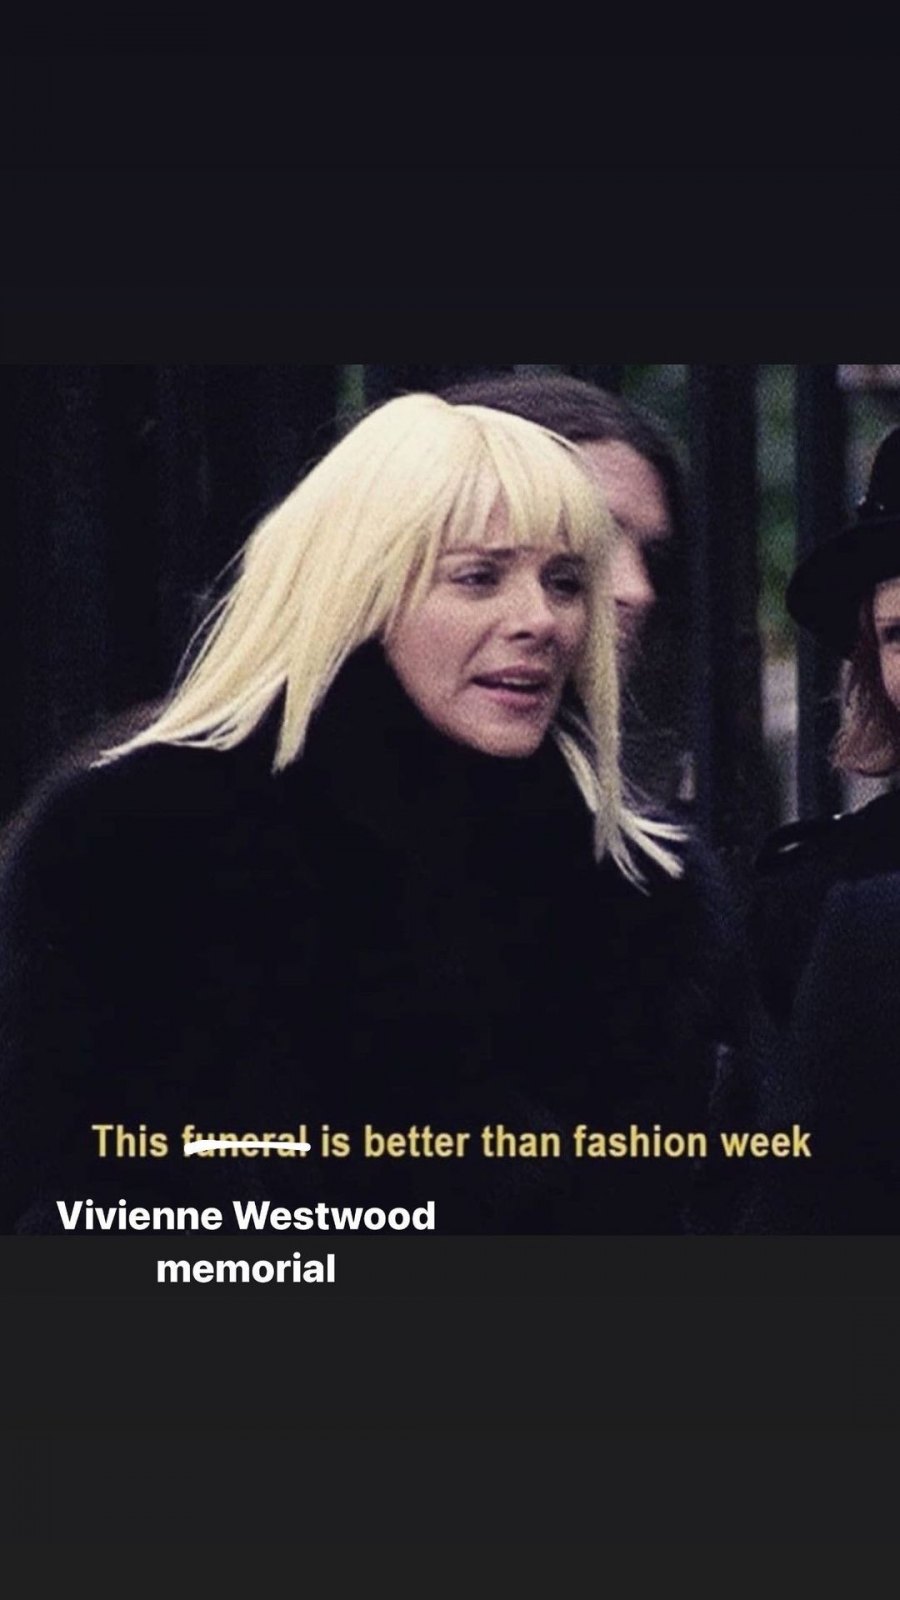 Στο μνημόσυνο της Vivienne Westwood το dress code ήταν αφιερωμένο στο έργο της μεγάλης σχεδιάστριας